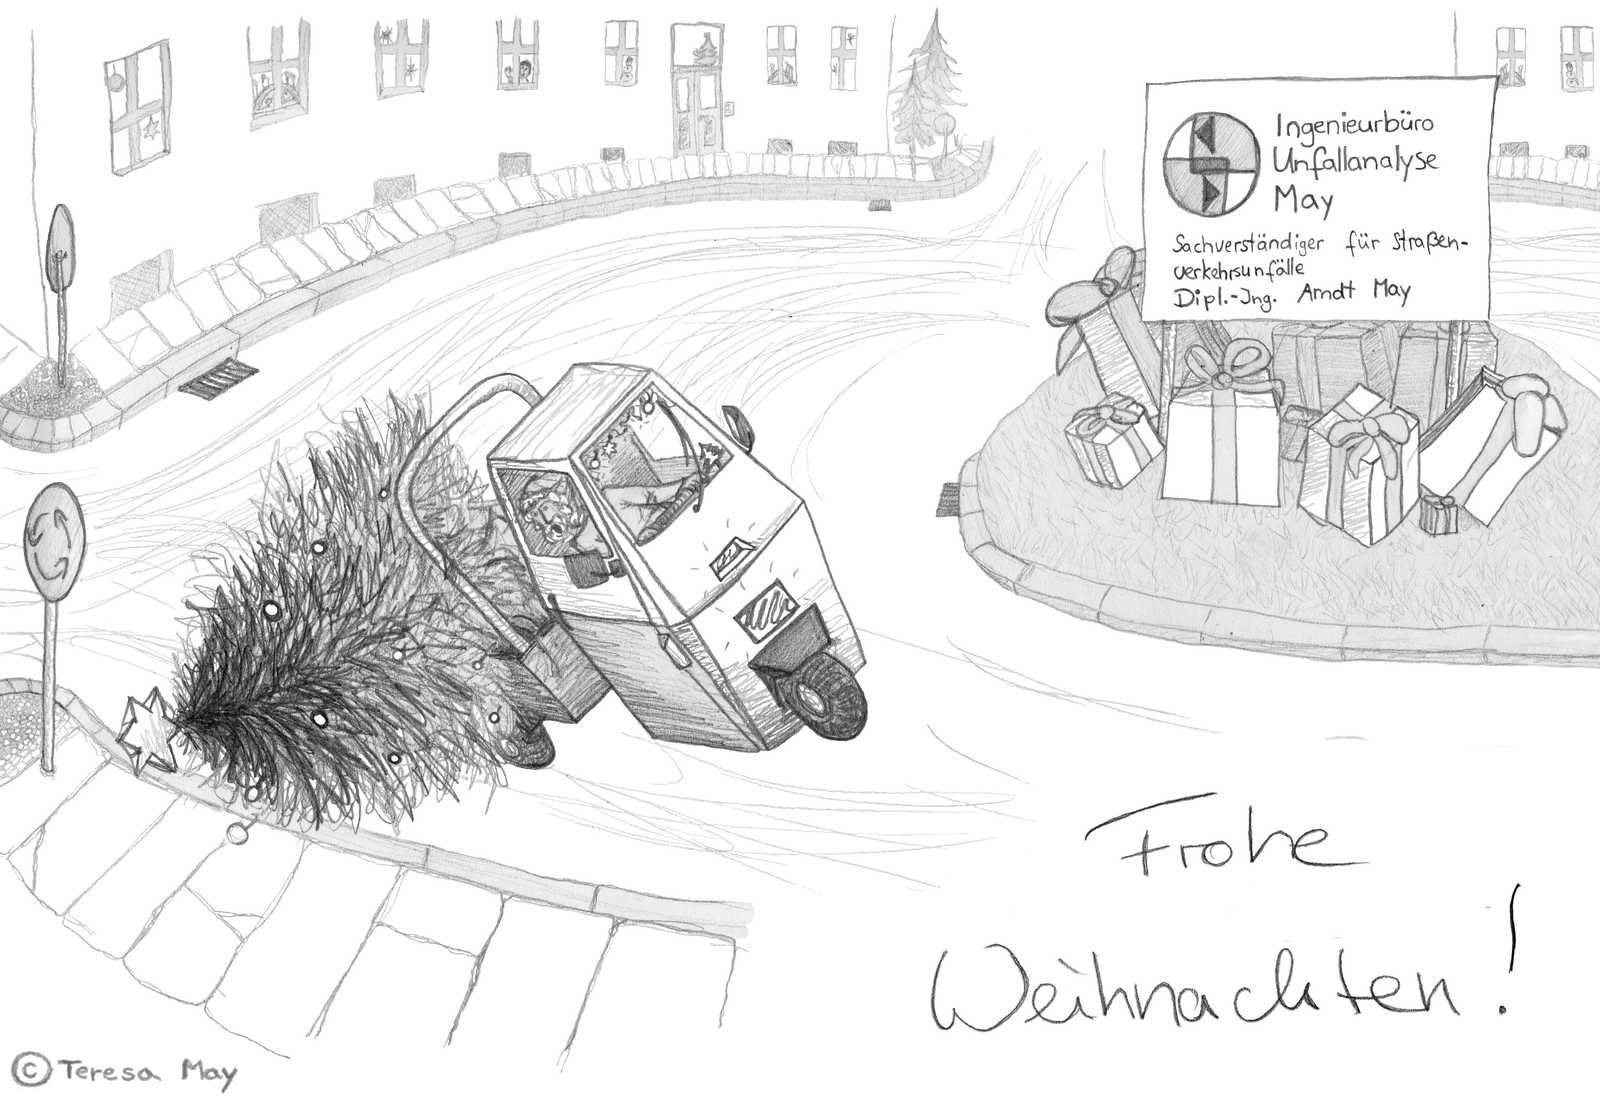 Weihnachtsmann fährt mit Dreirad zu schnell durch einen Kreisverkehr und kippt mit geladenen Weihnachtsbaum auf zwei Räder